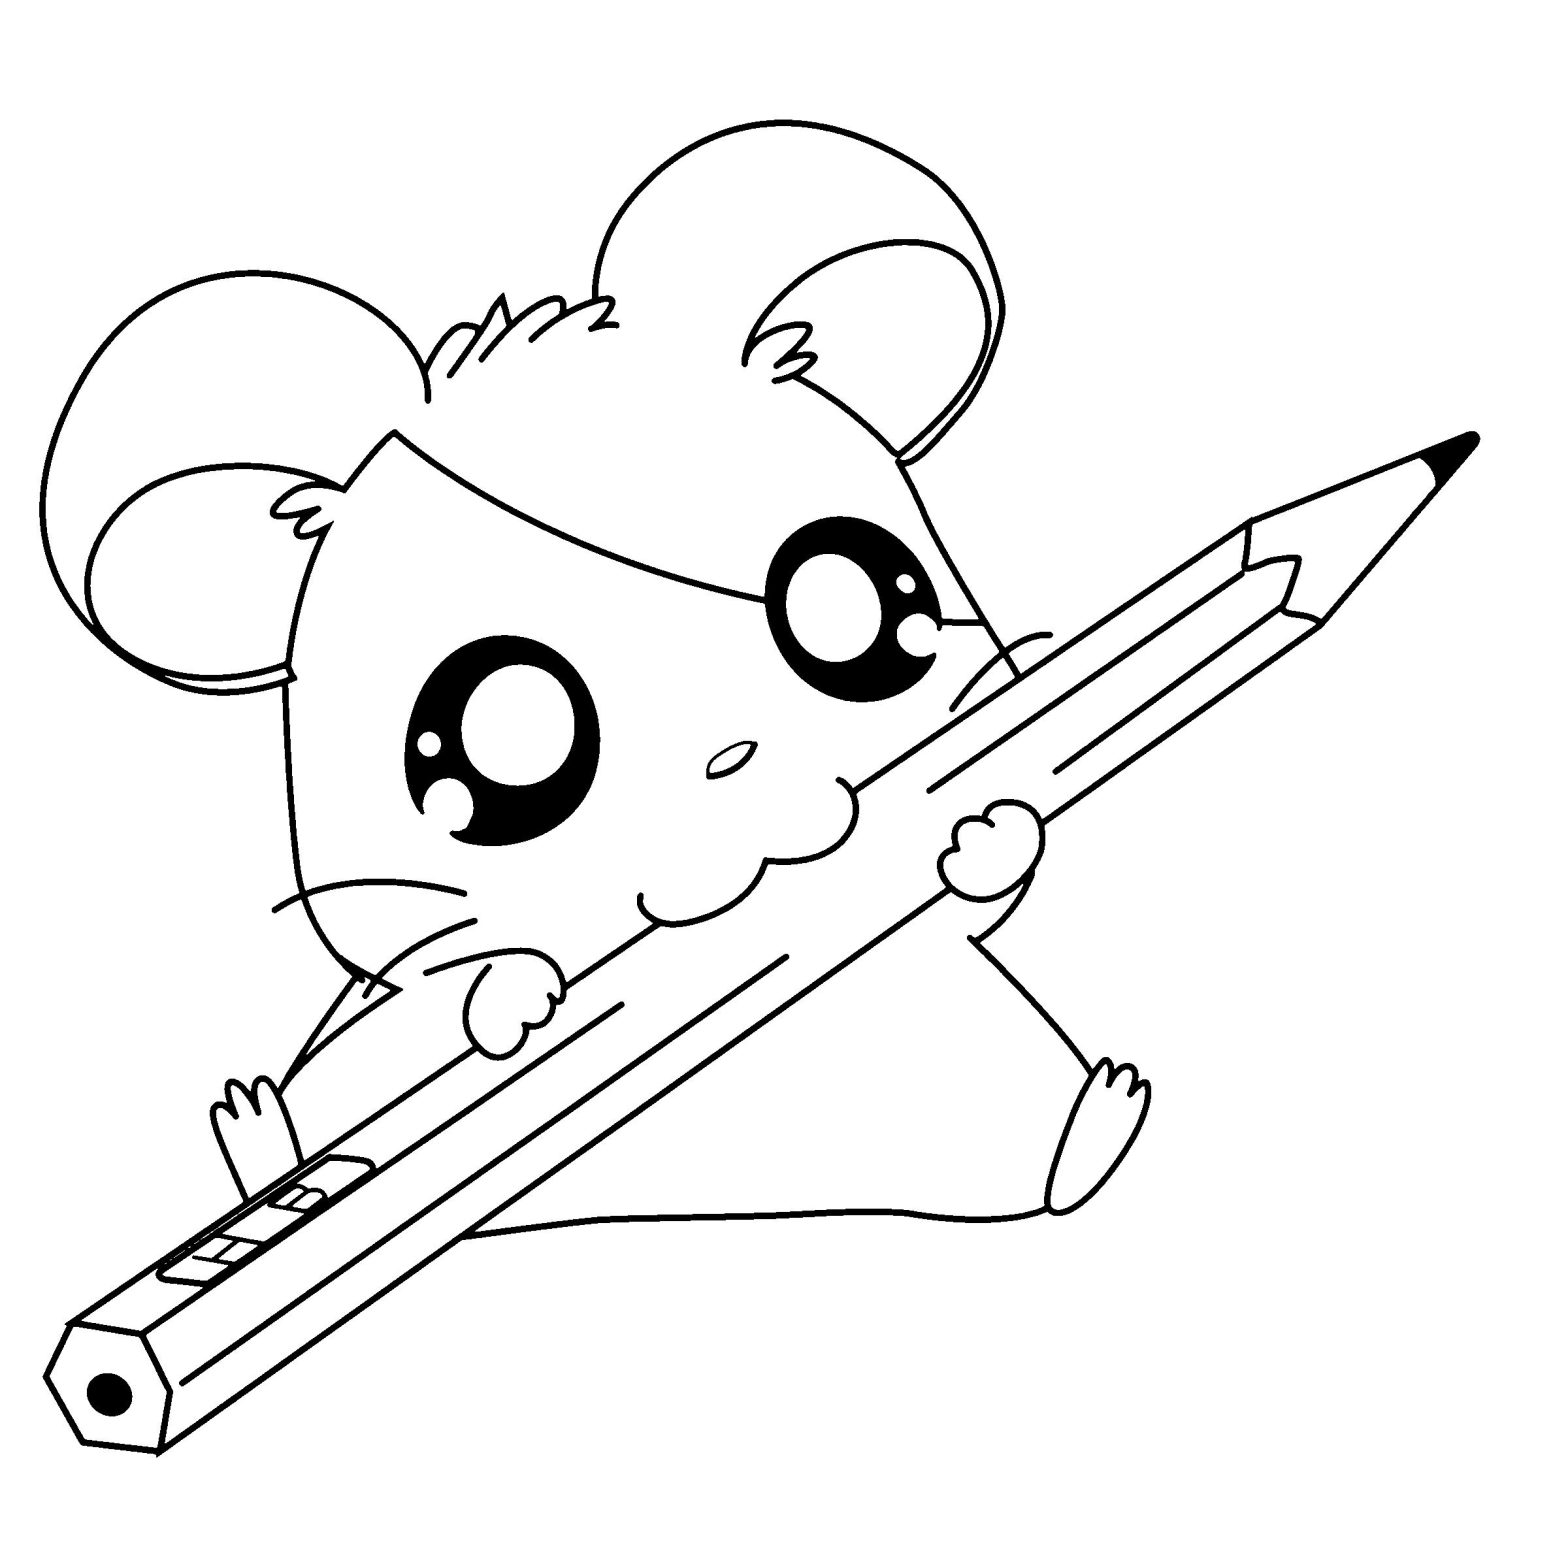 Милый мышонок с большими глазами и карандашом - раскраска для девочки (мышонок, милый)